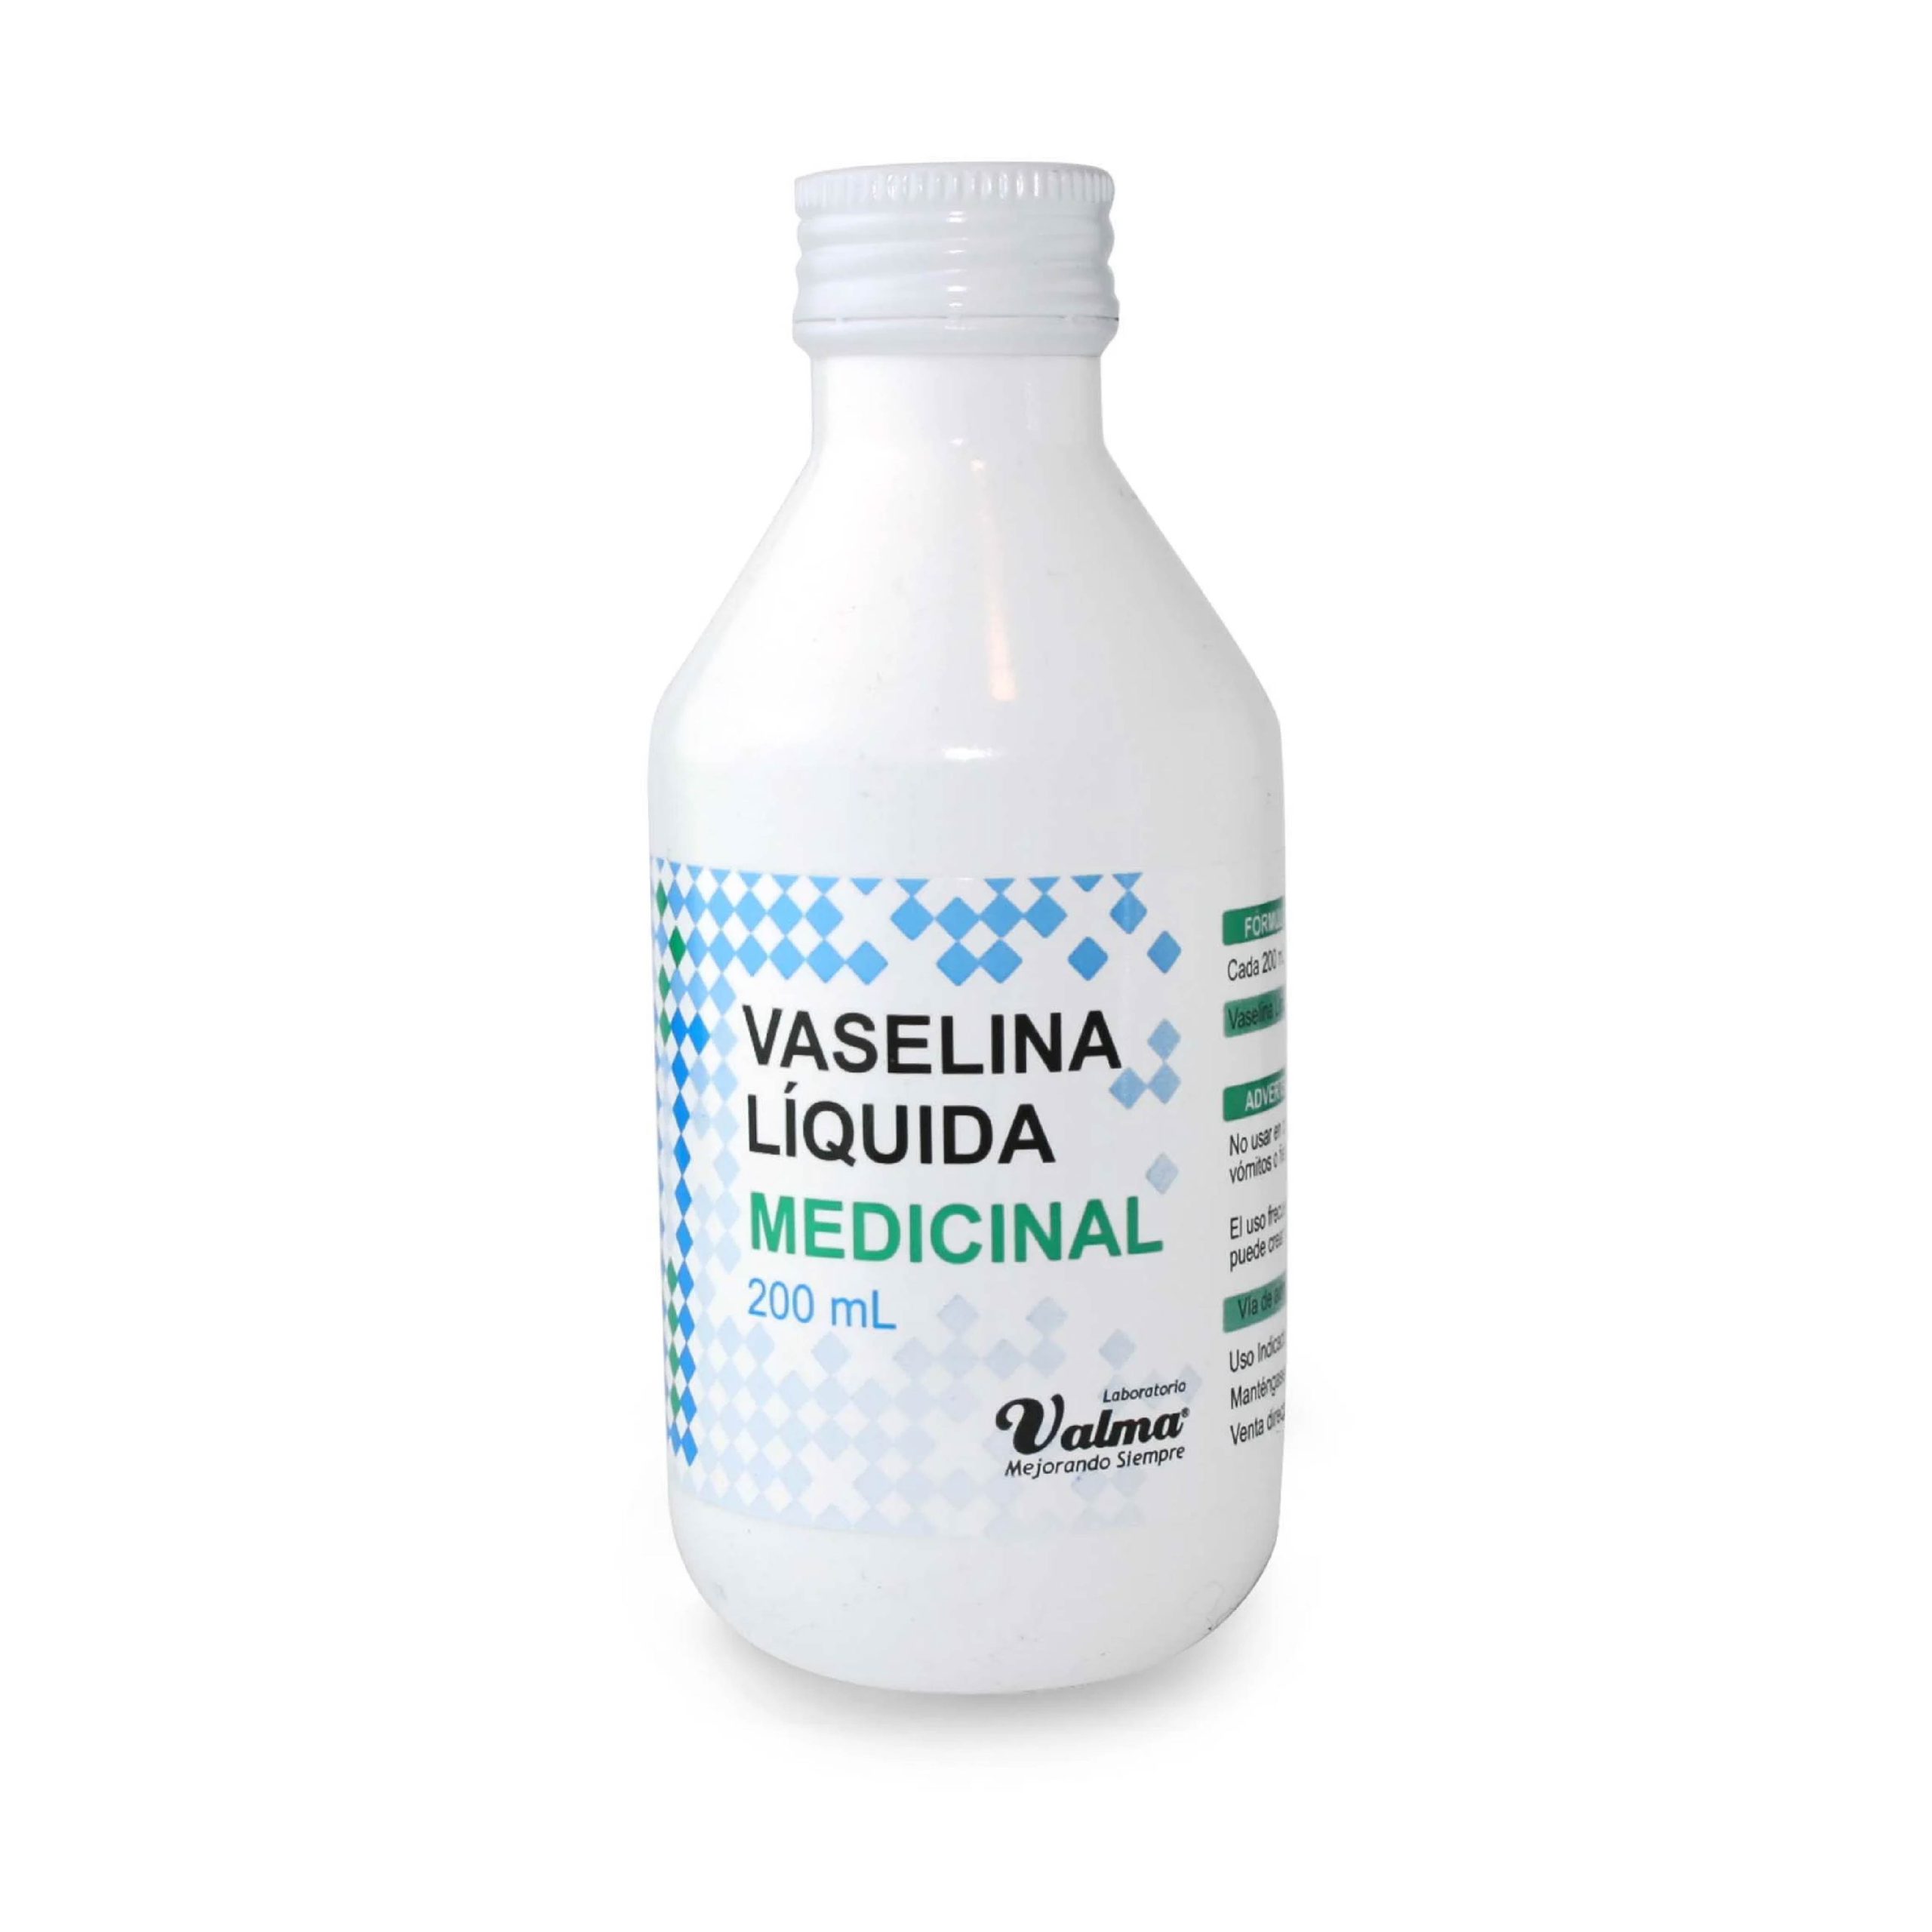 VASELINA LIQUIDA MEDICINAL 500ml TABLADA cod:00150 02-24 – www